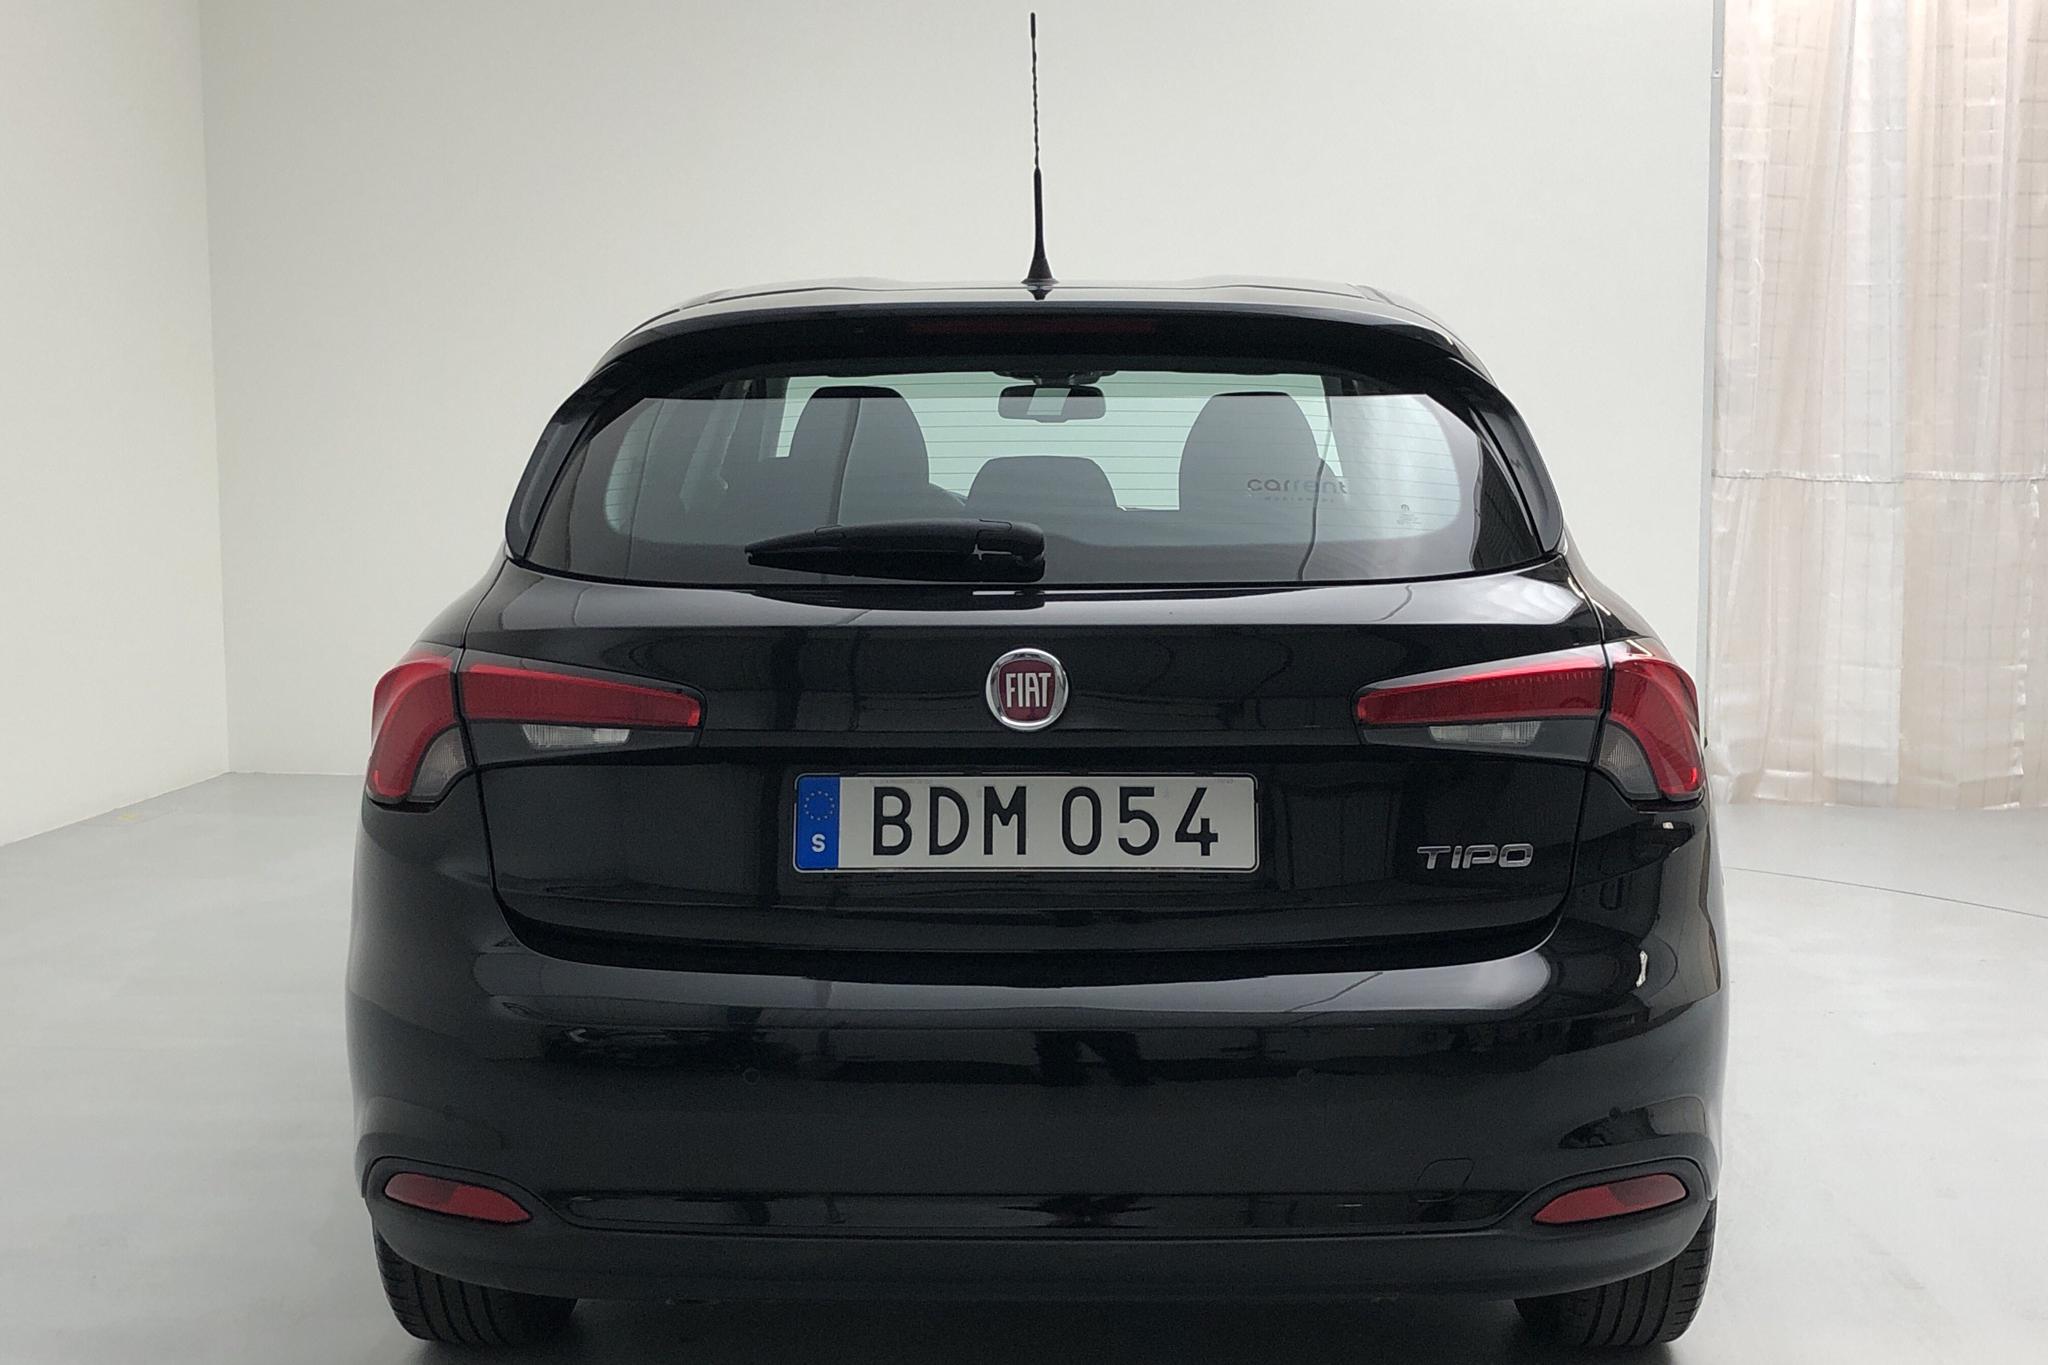 Fiat Tipo 1.6 5dr (120hk) - 4 331 mil - Manuell - svart - 2017